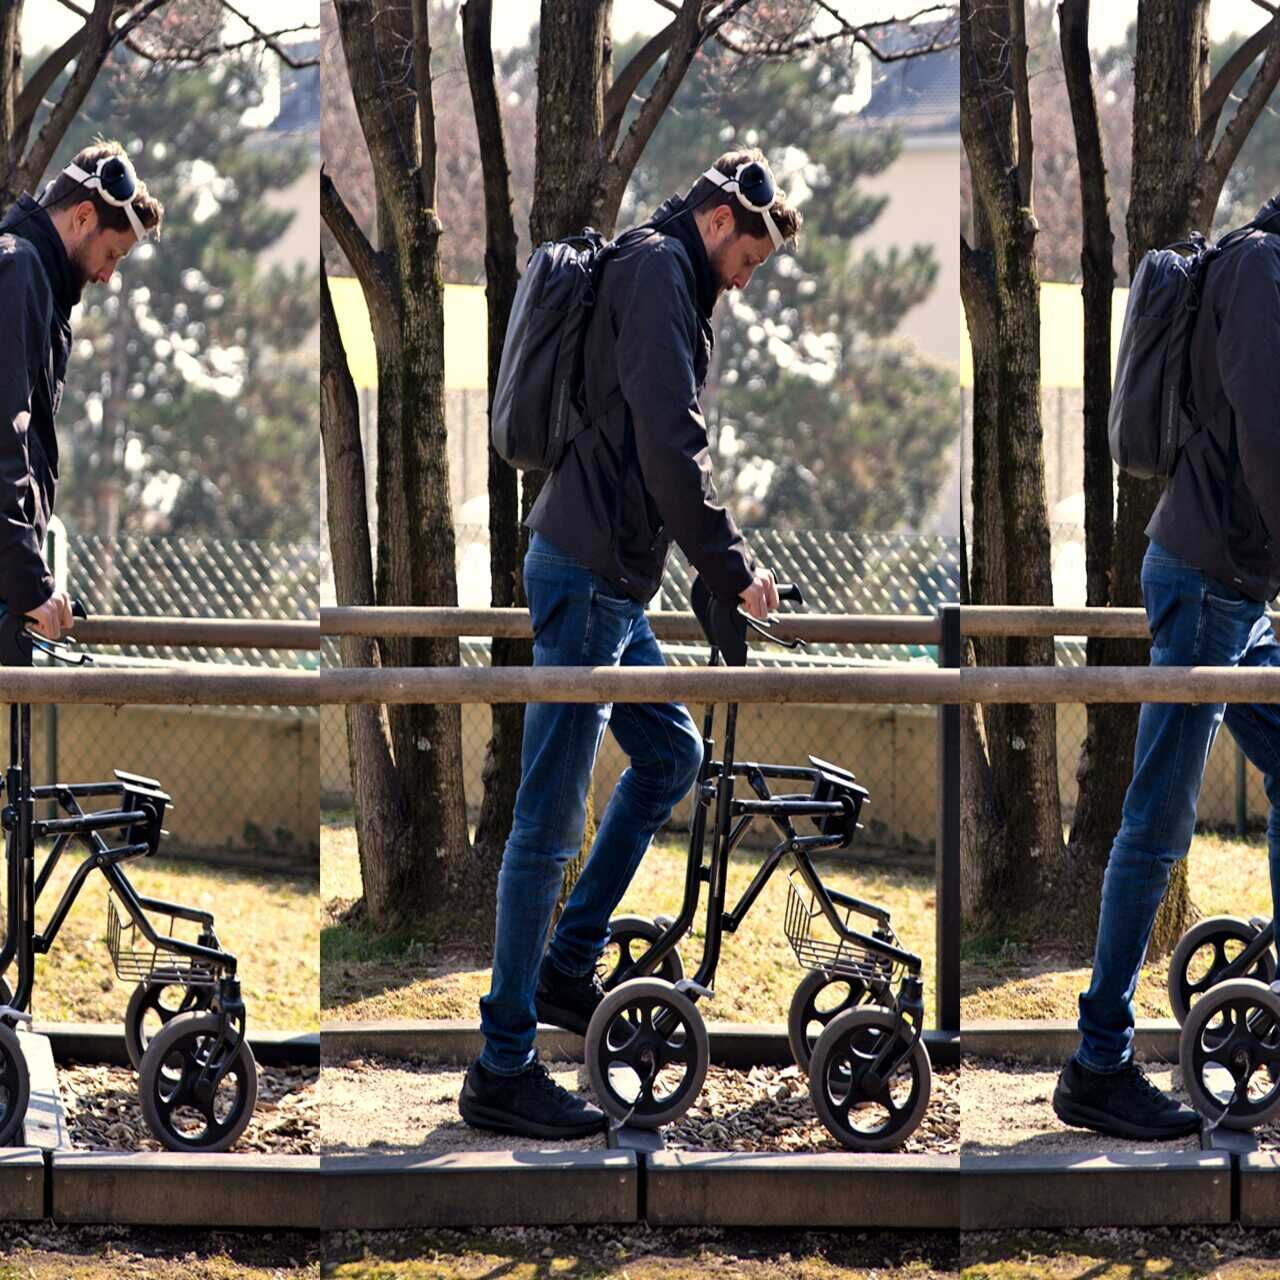 Camminare grazie al pensiero: Gert-Jan Oskam, rimasto paralizzato agli arti inferiori in seguito a un incidente in bicicletta e che ha ripreso a camminare grazie a un ponte digitale fra cervello e midollo spinale, all’Università di Losanna